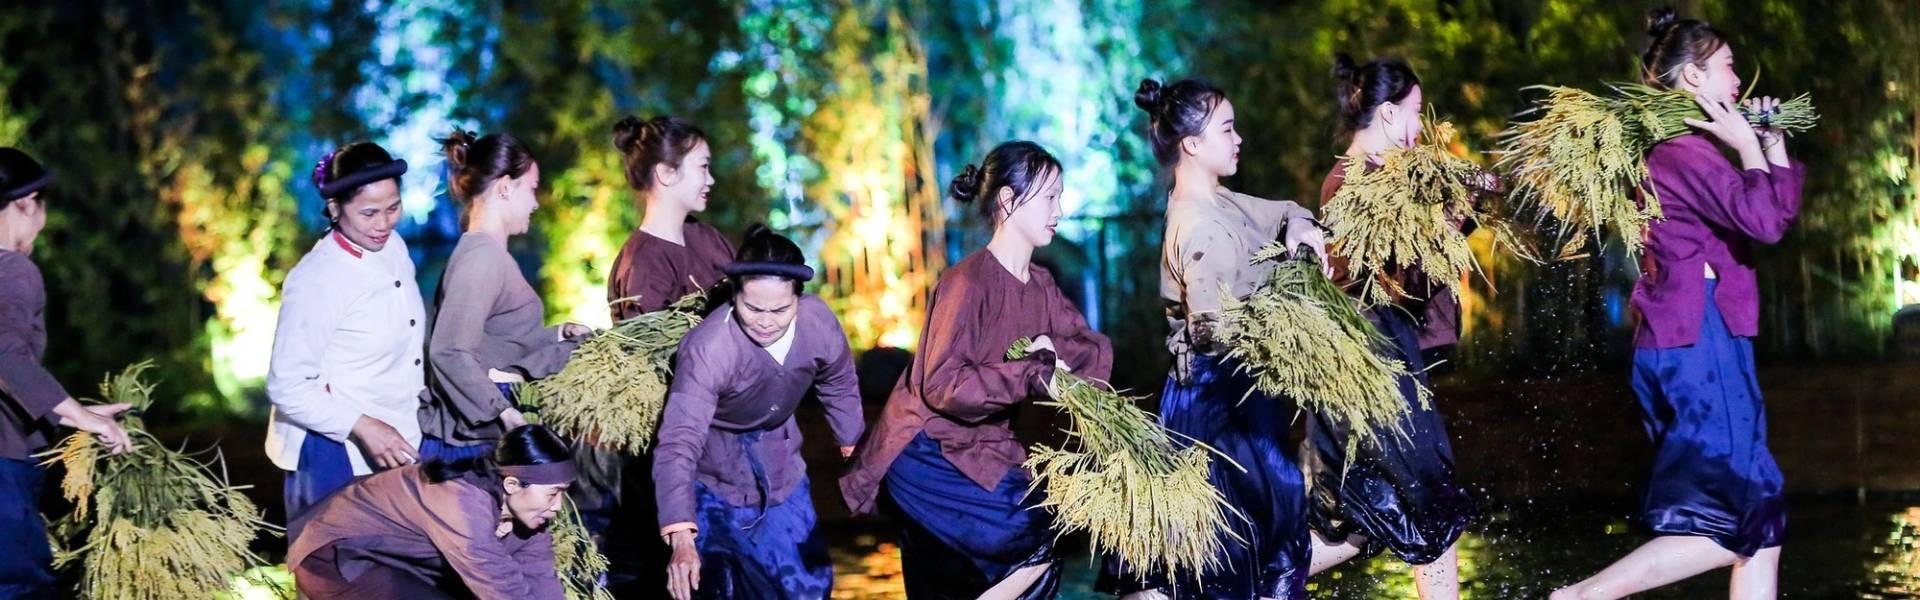 Quintessence du Tonkin : Spectacle sur la culture du Nord Vietnam